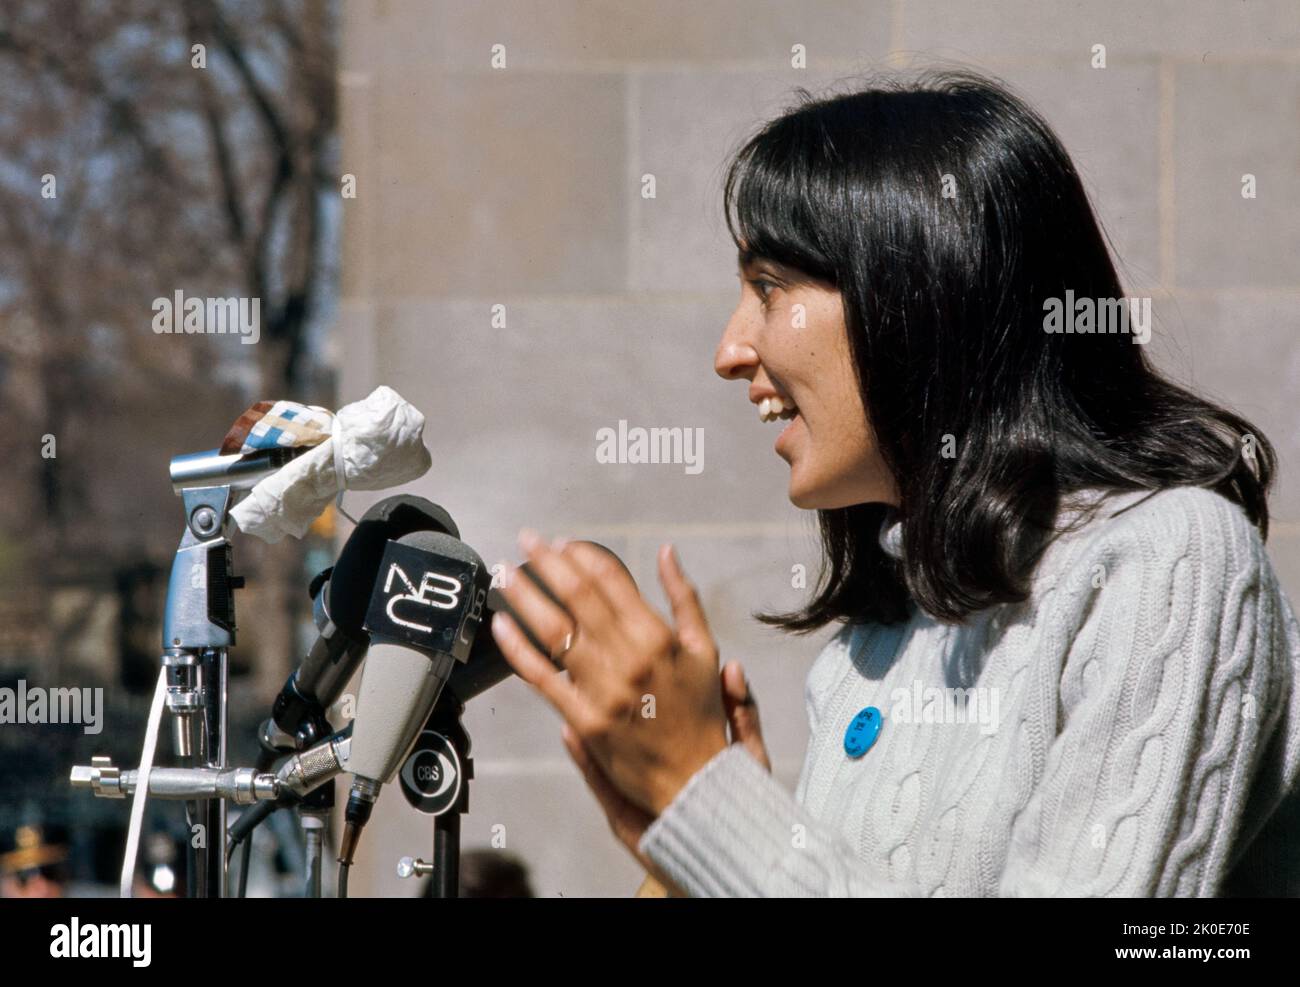 Joan Baez (nacido en 1941) Cantante, compositor, músico y activista estadounidense. Baez se hizo más vocal sobre su desacuerdo con la Guerra de Vietnam. 1972. Foto de stock